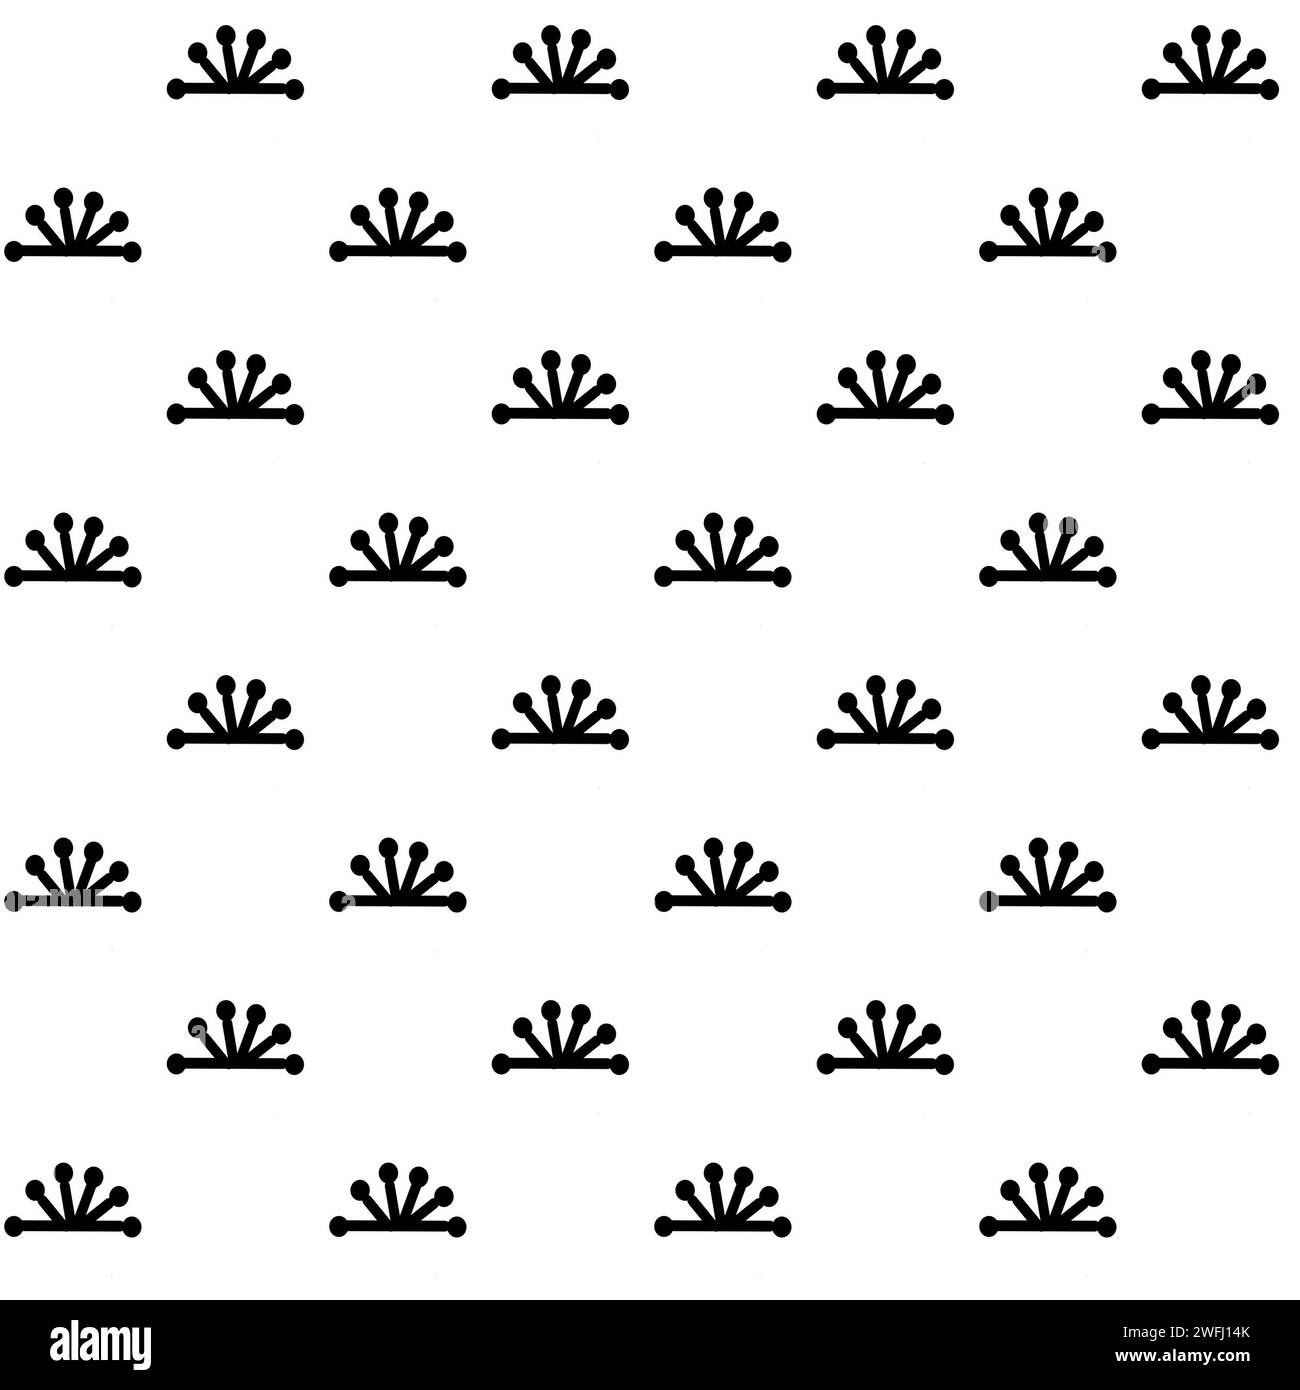 Ilustración de patrón decorativo. Diseño de impresión en blanco y negro Foto de stock